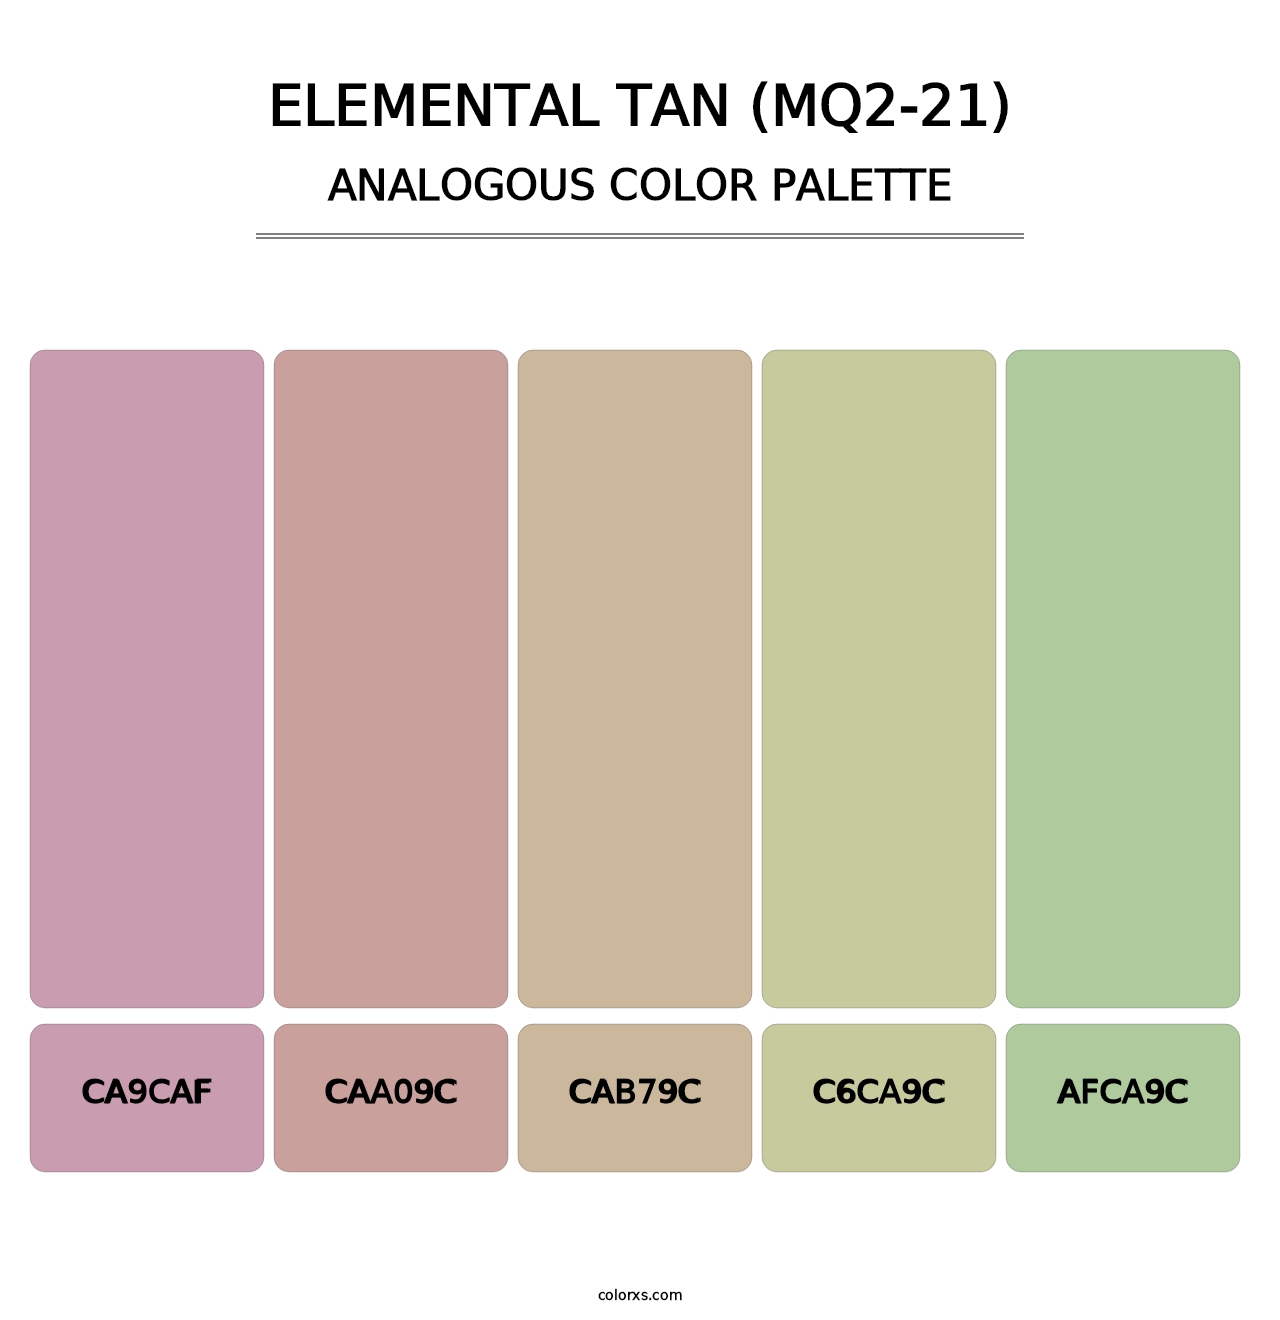 Elemental Tan (MQ2-21) - Analogous Color Palette